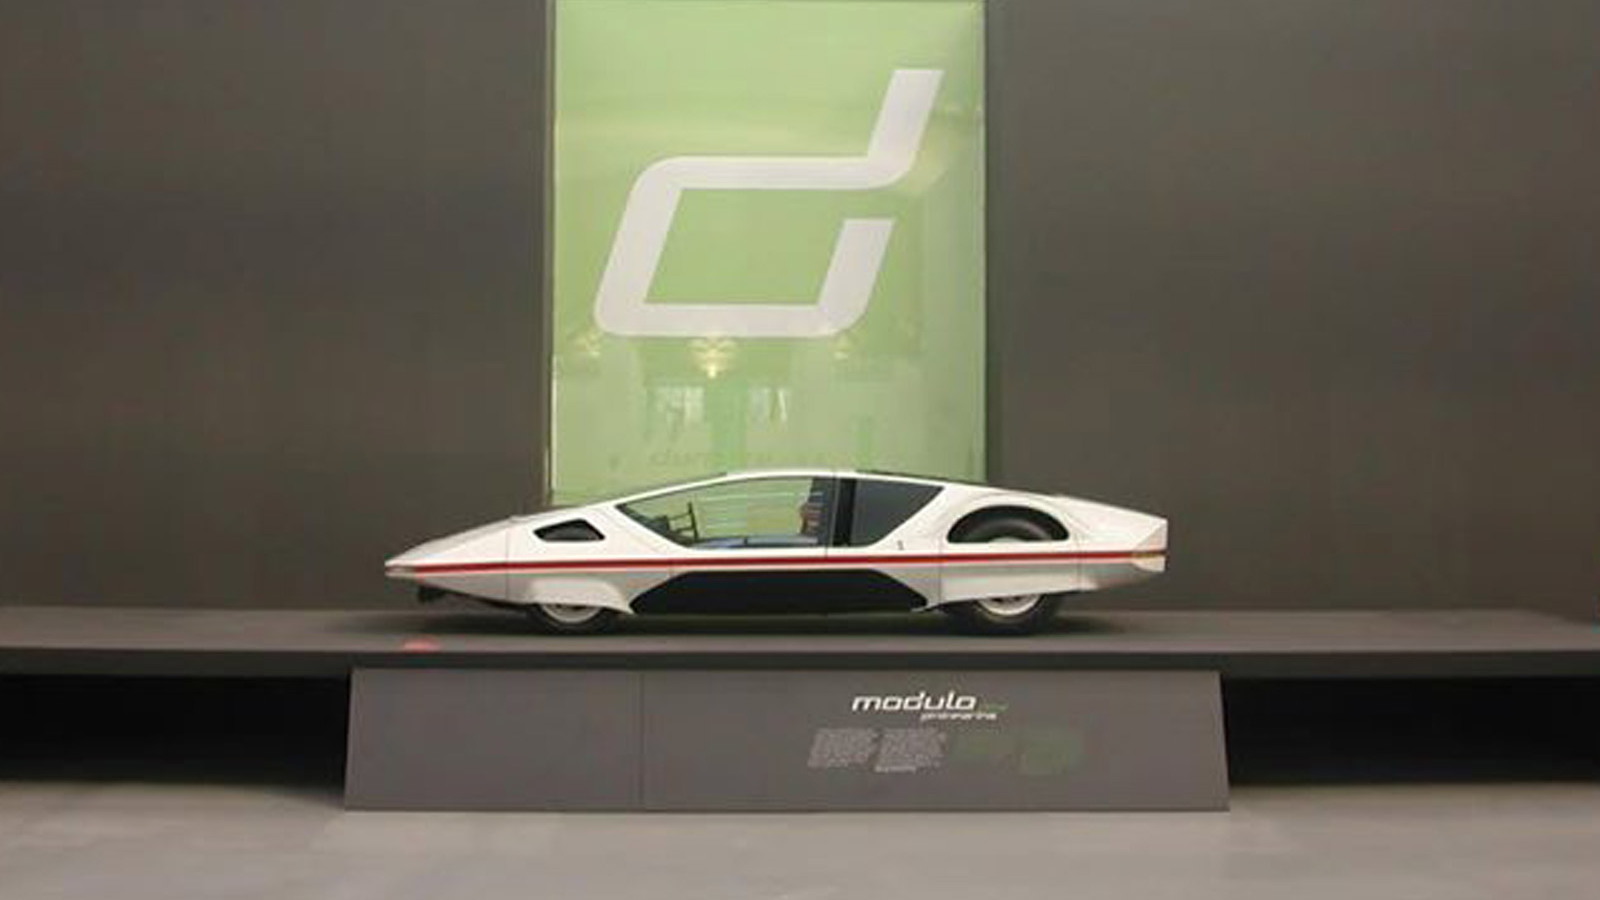 Ferrari Modulo concept